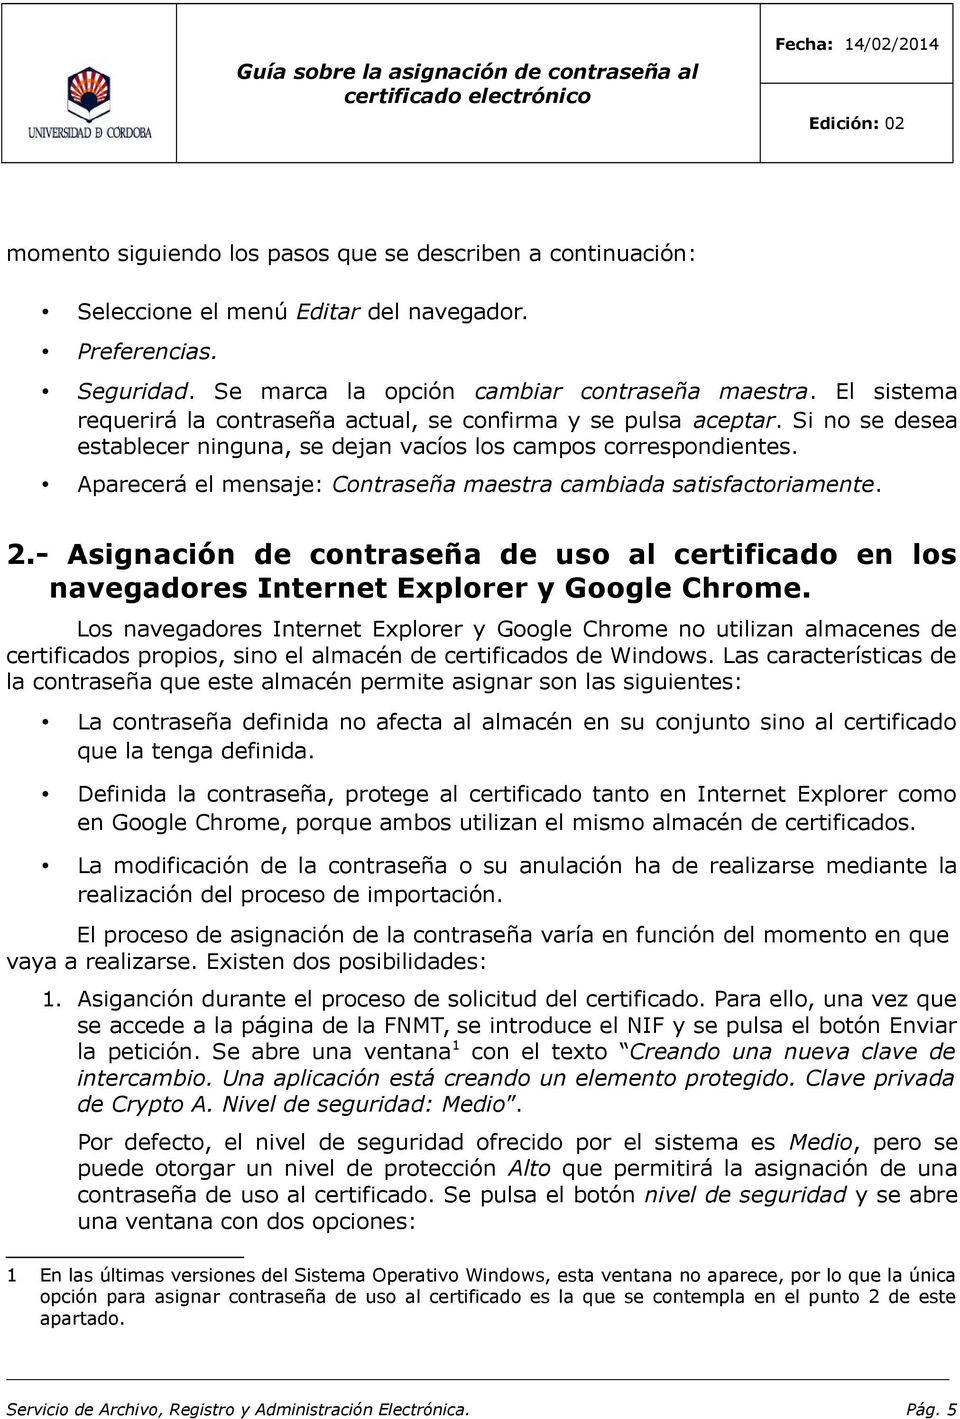 - Asignación de contraseña de uso al certificado en los navegadores Internet Explorer y Google Chrome.